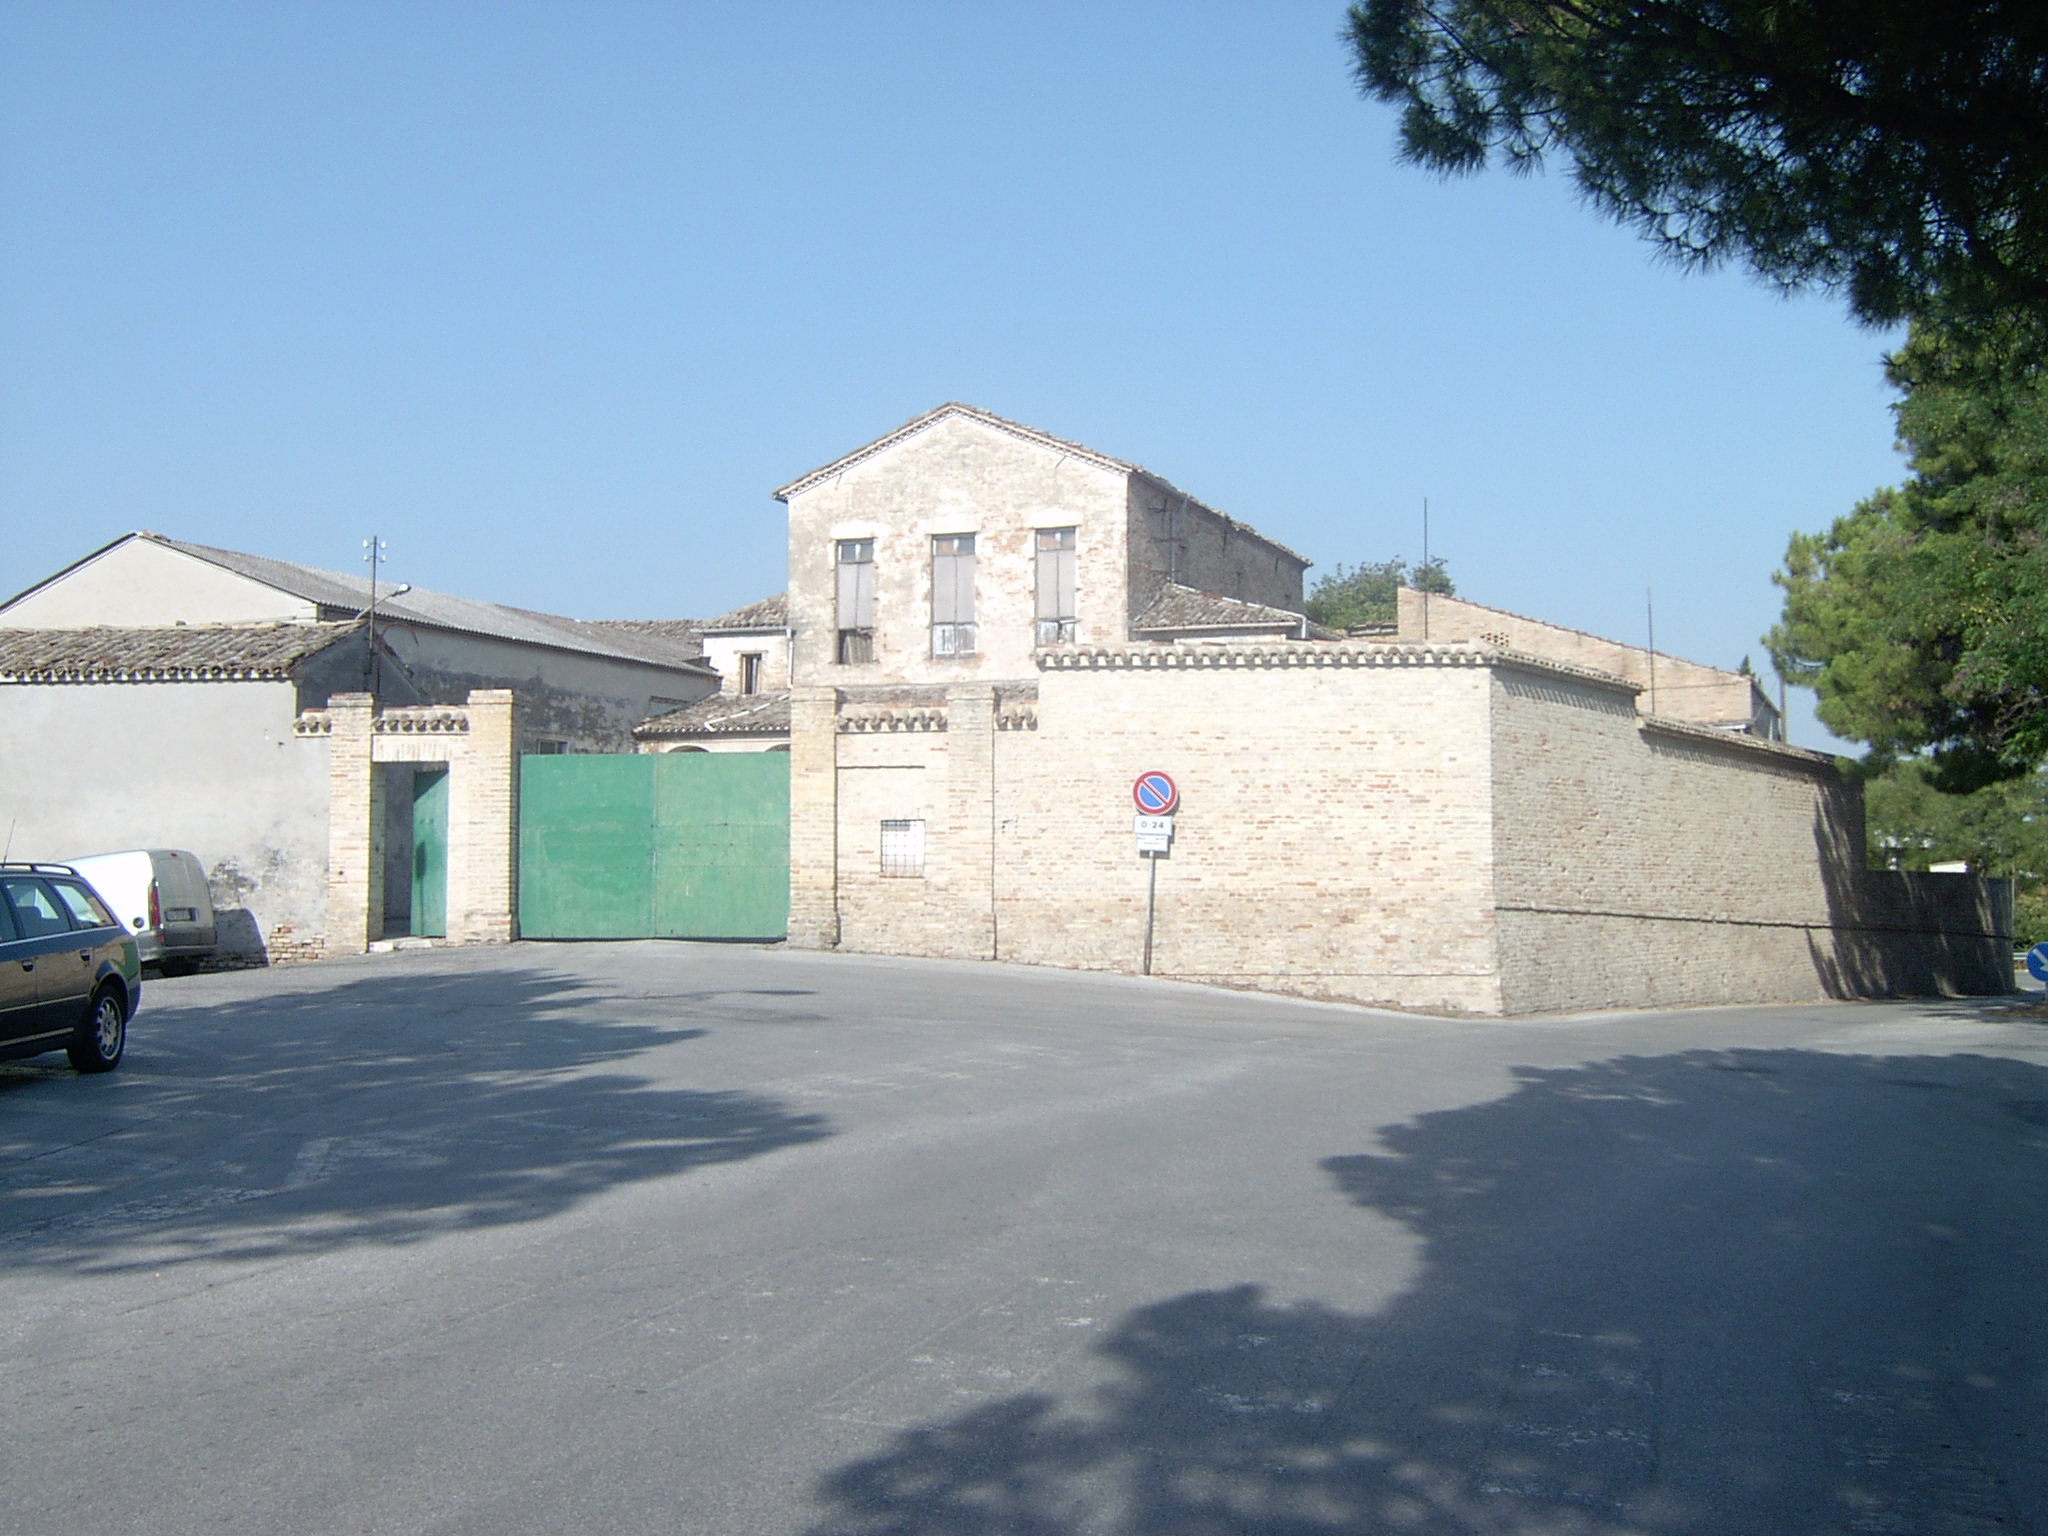 Convento di S. Bonaventura (convento, francescano (cappuccini)) - Corridonia (MC) 